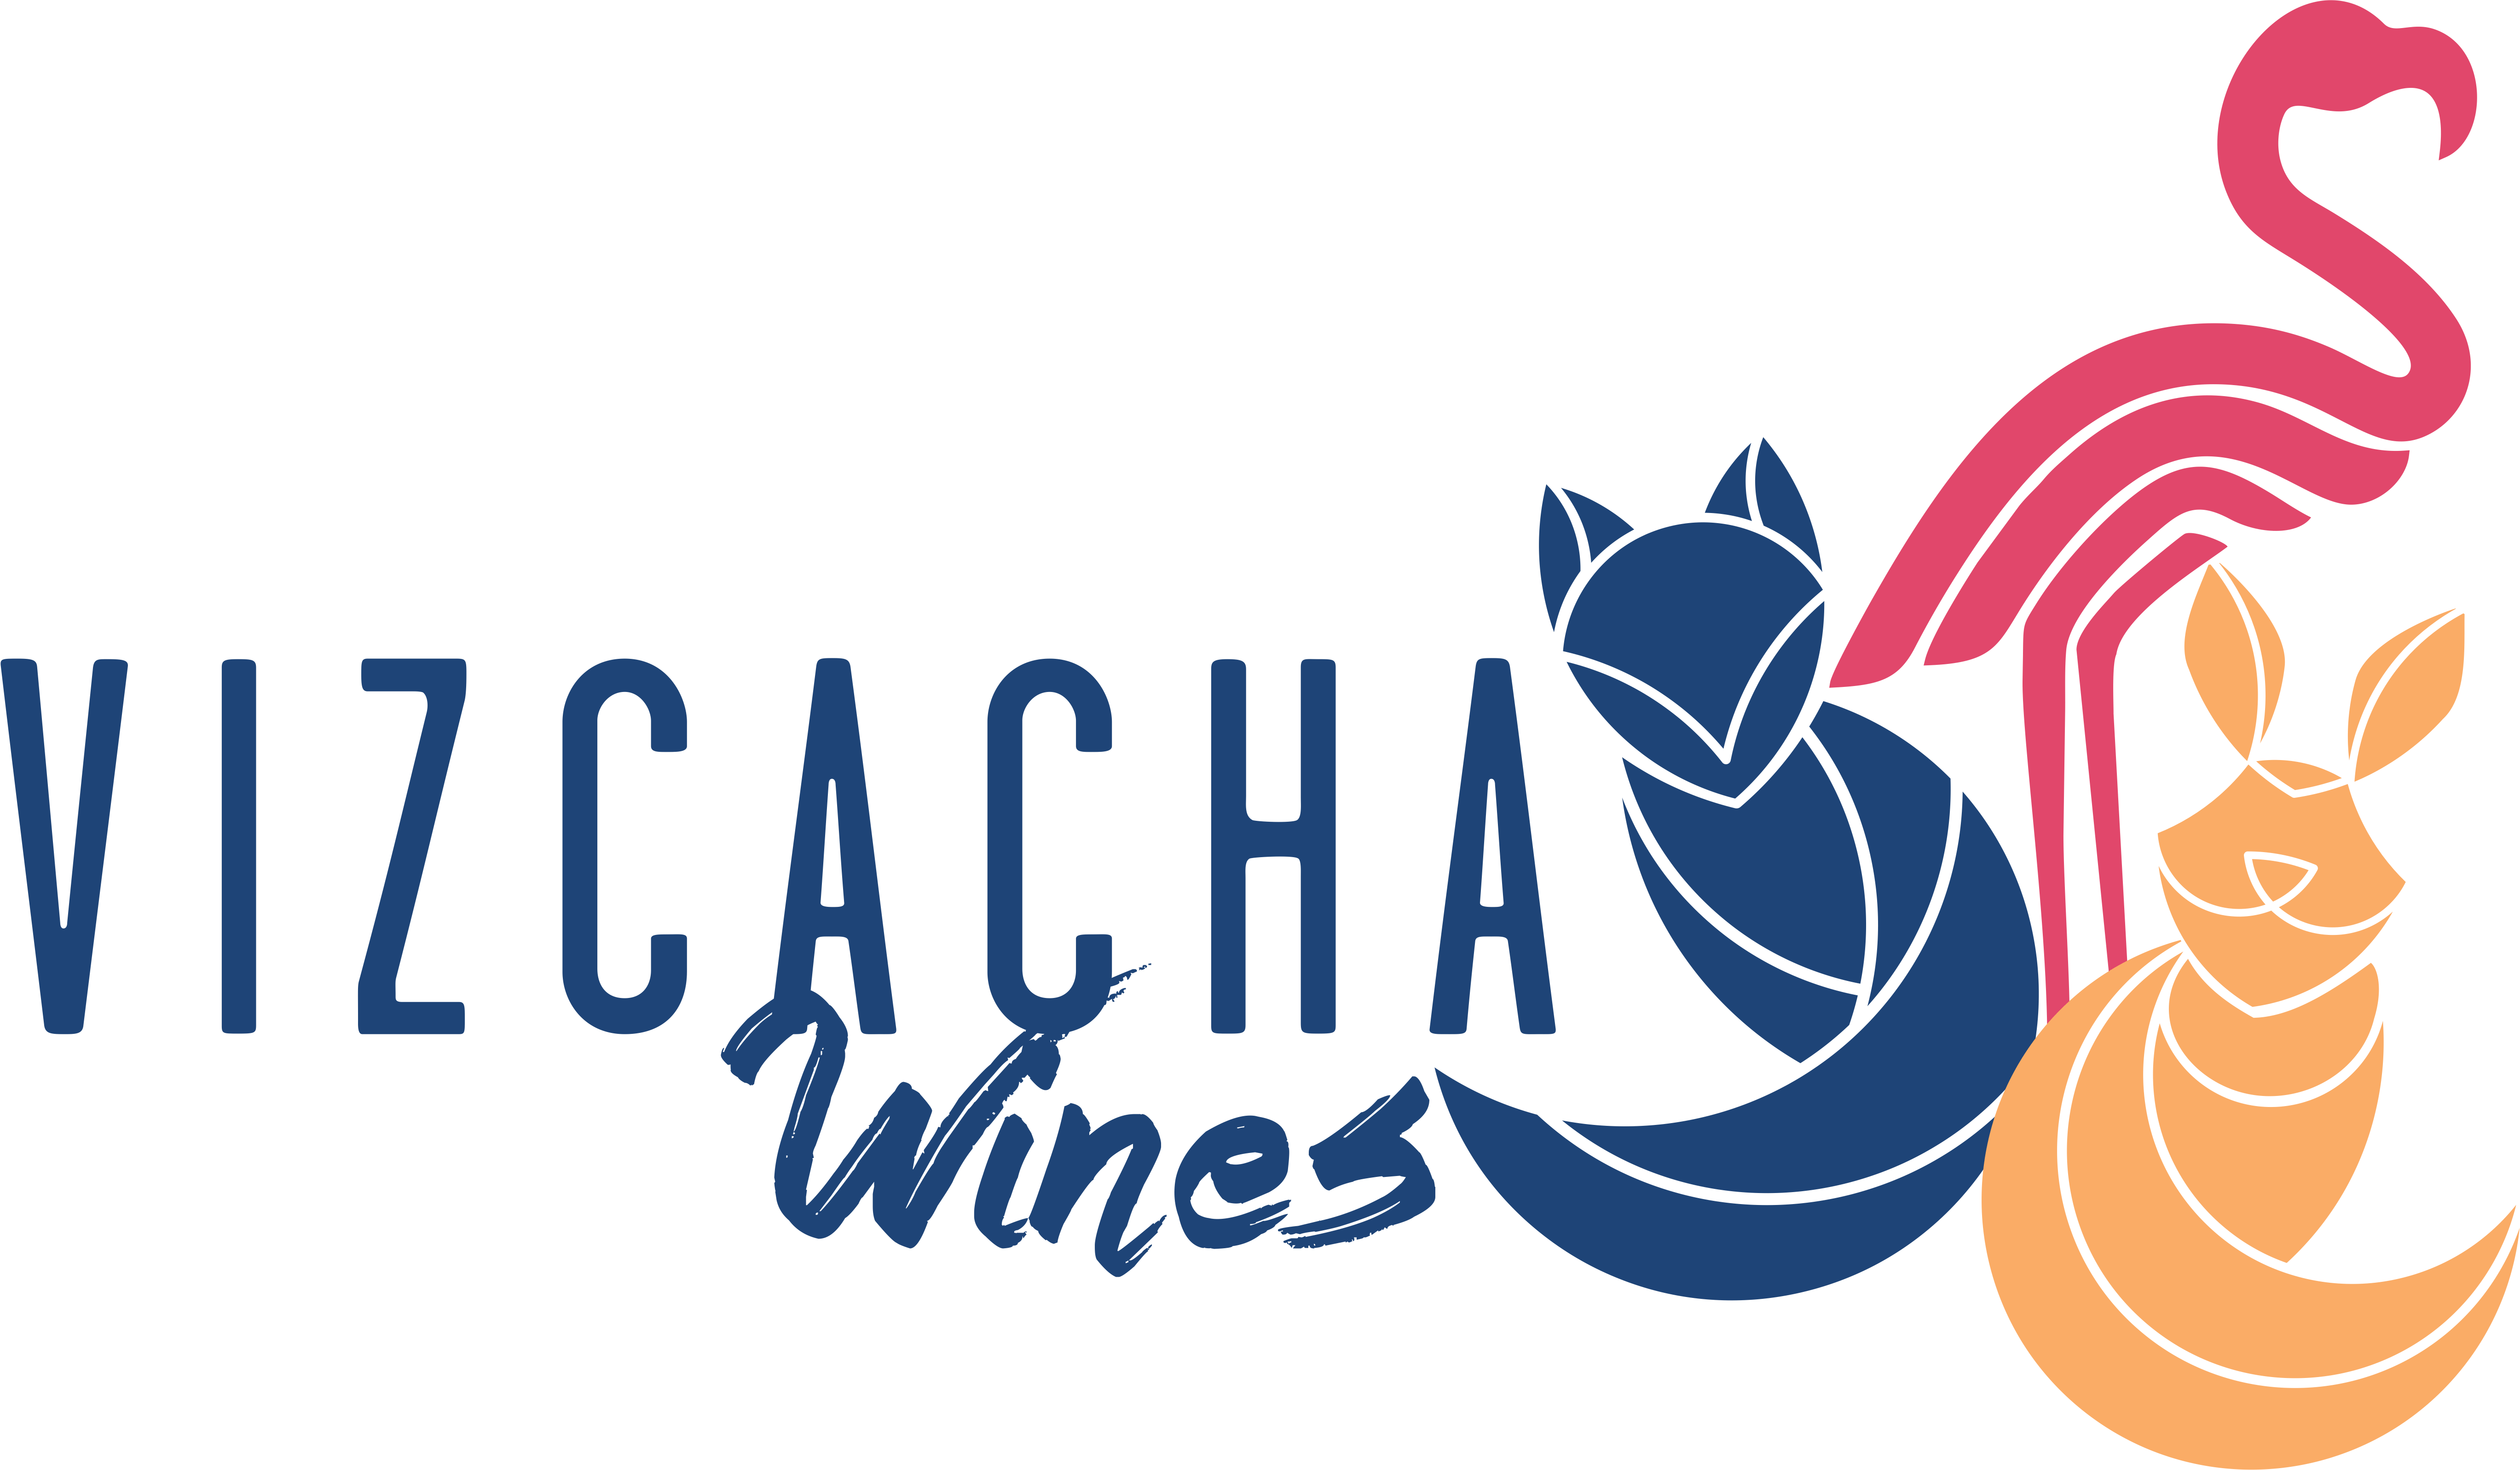 Vizcacha Wines SAS